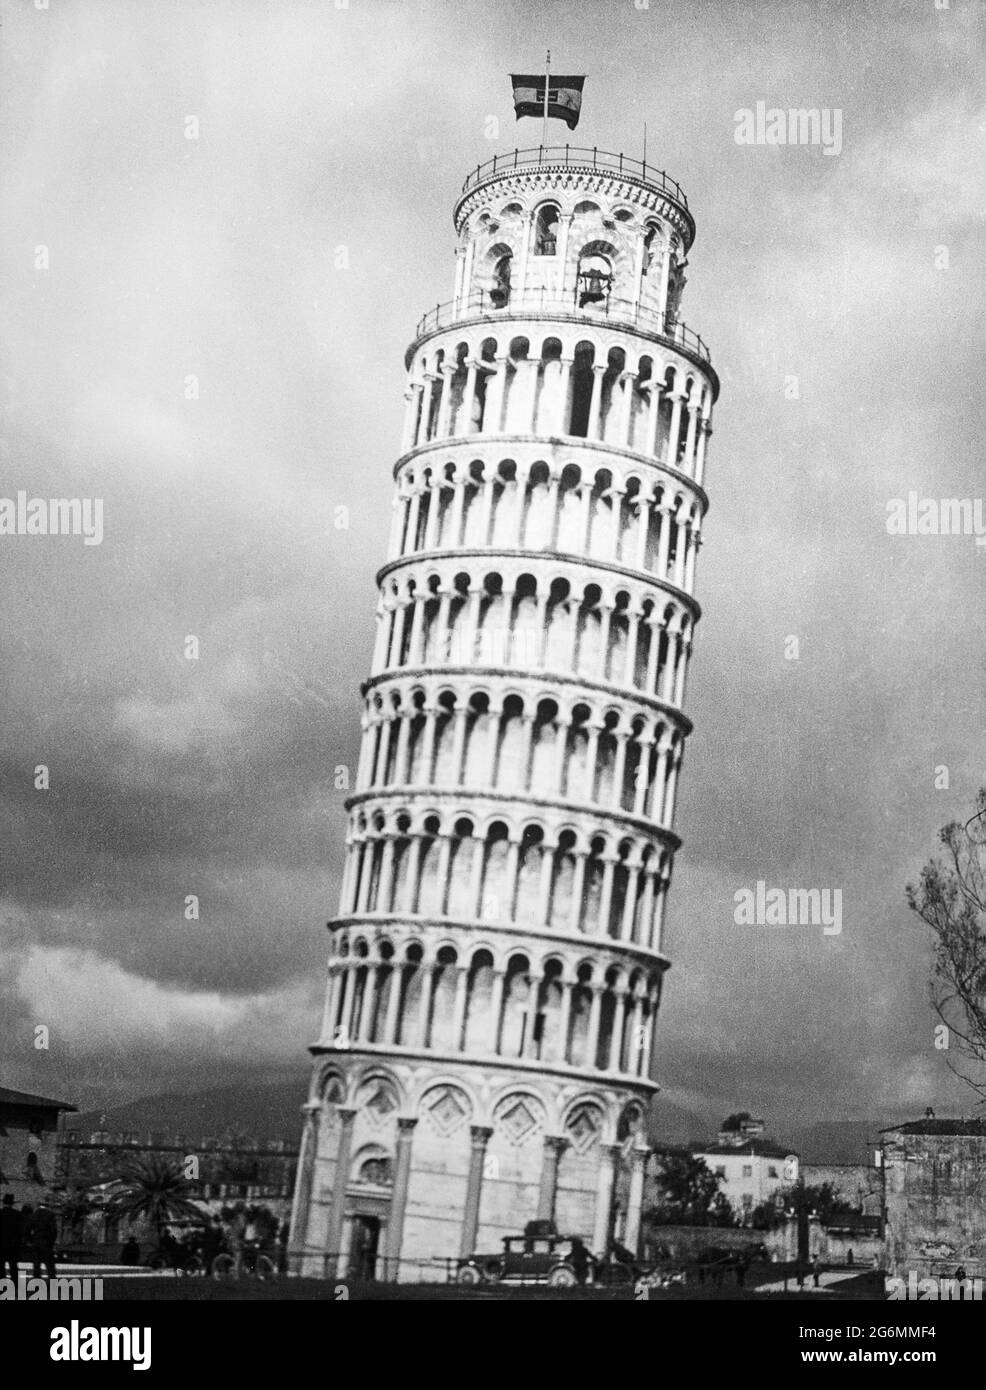 Une photographie noir et blanc vintage du début du XXe siècle de la tour penchée de Pise en Italie. Banque D'Images